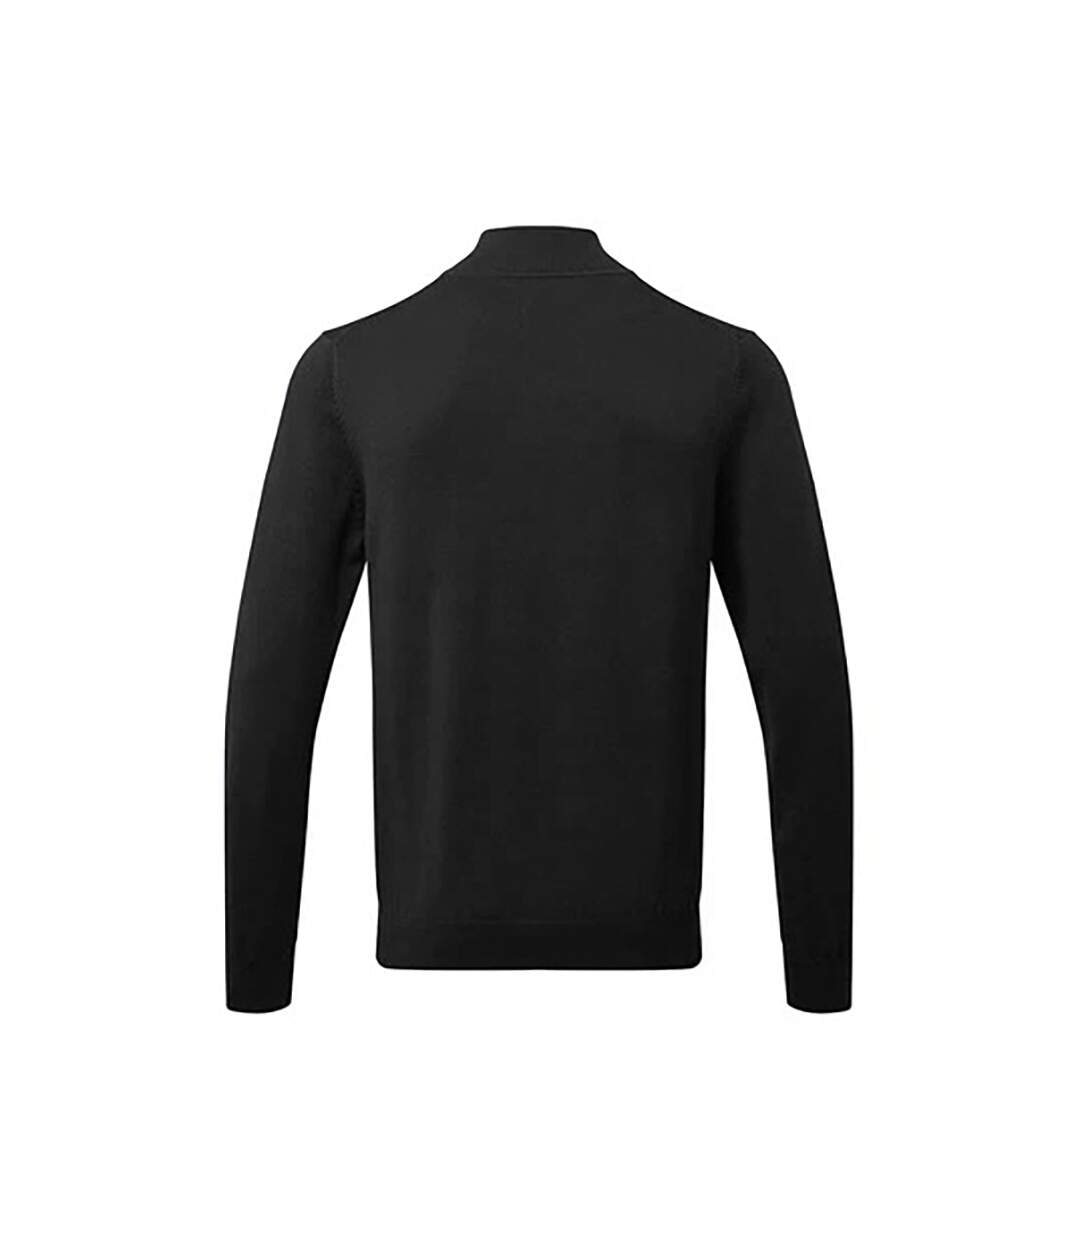 Asquith & Fox Mens Cotton Blend Zip Sweatshirt (Black) - UTRW6640